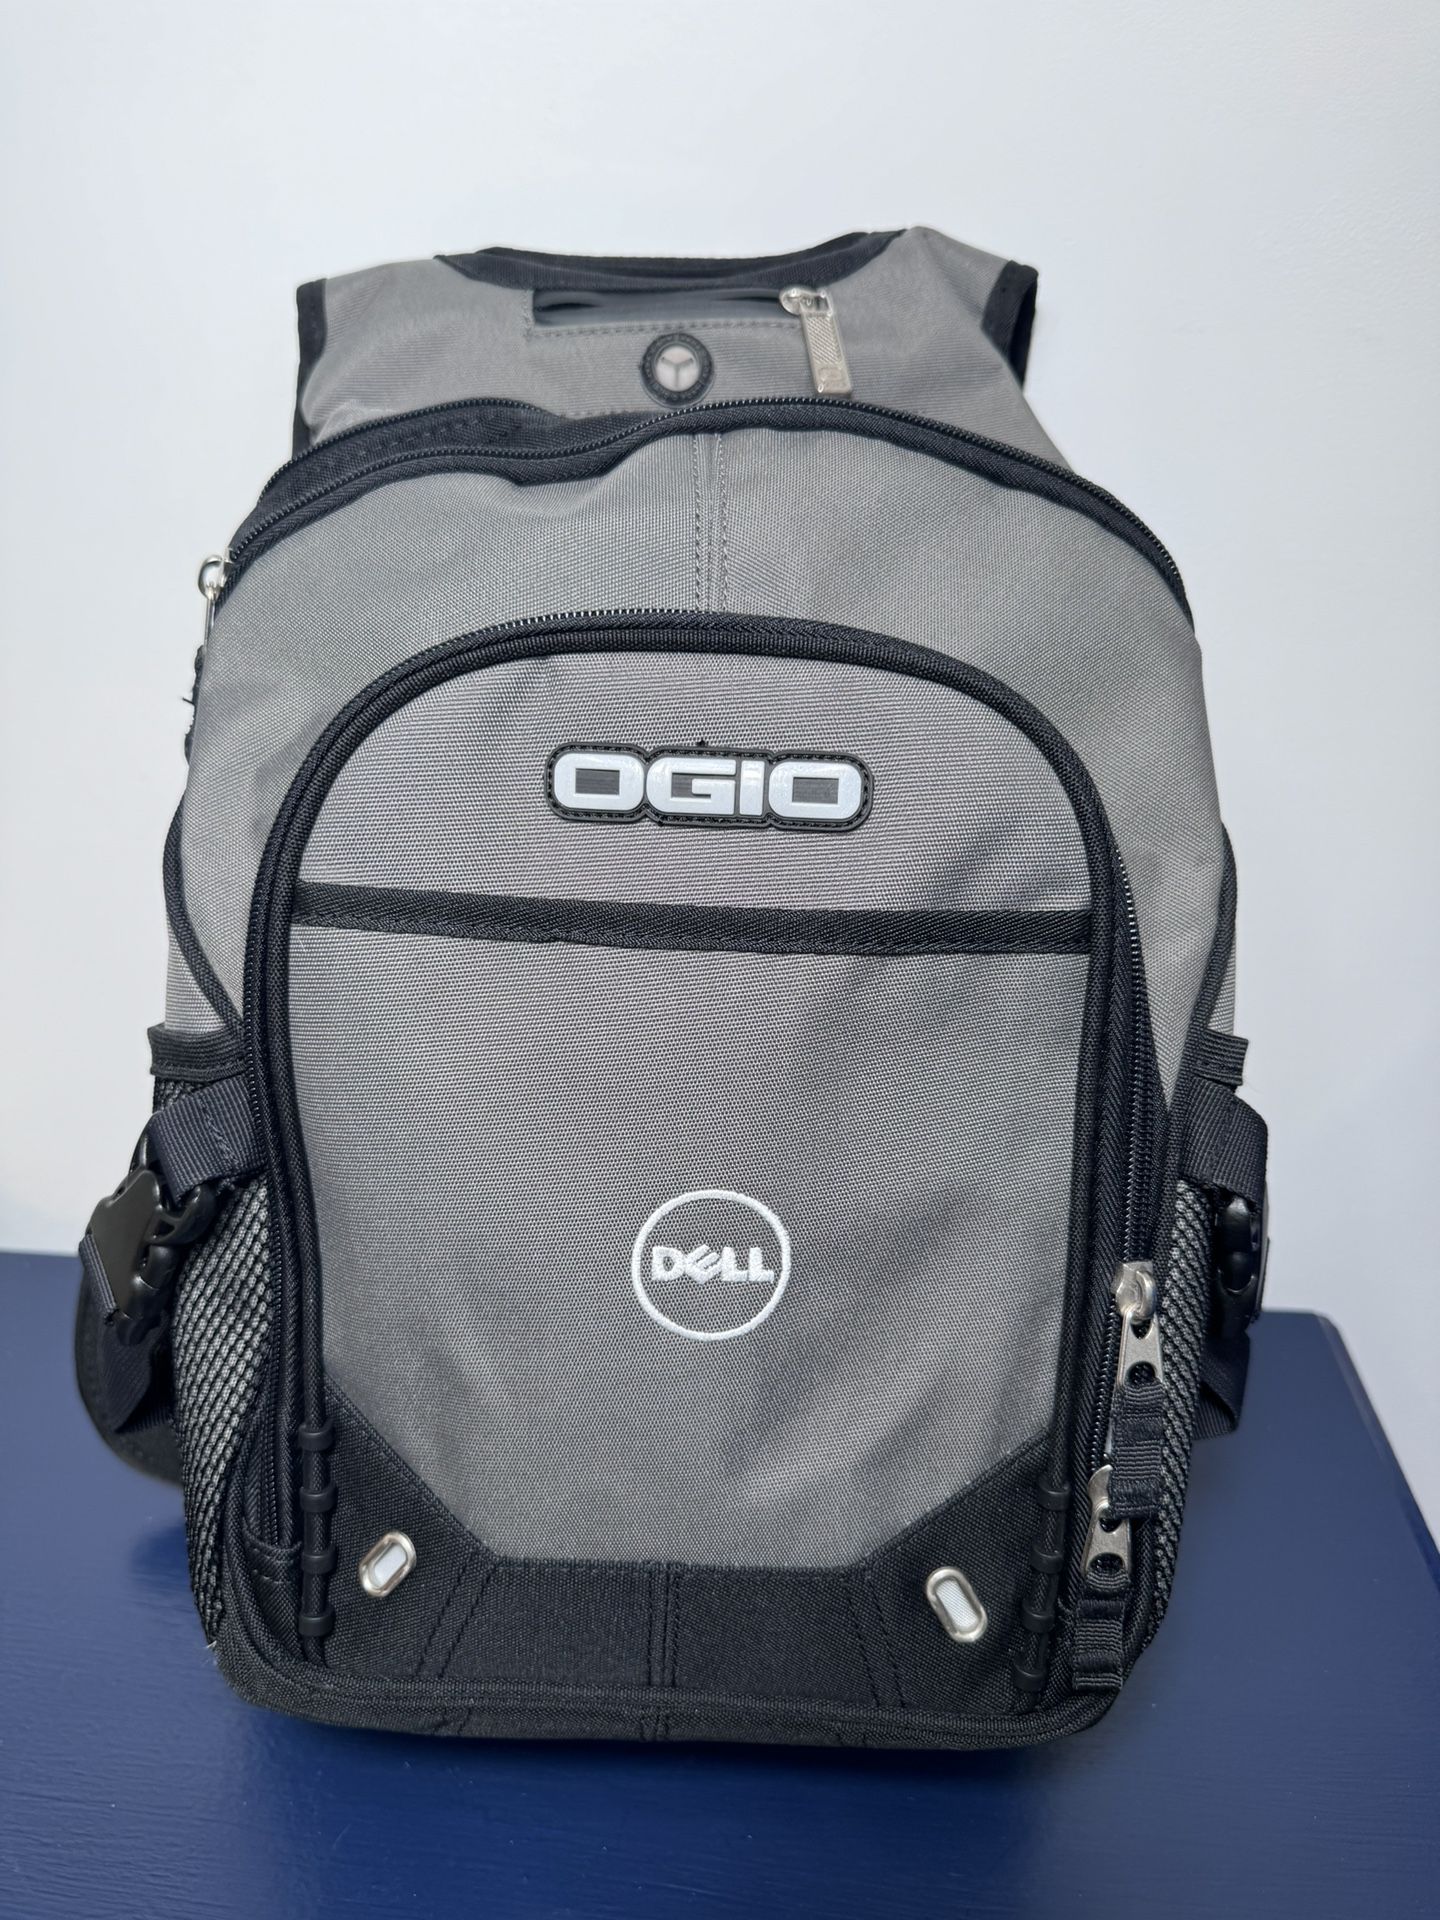 OGIO Fugitive Laptop Backpack 15” Laptop Dell